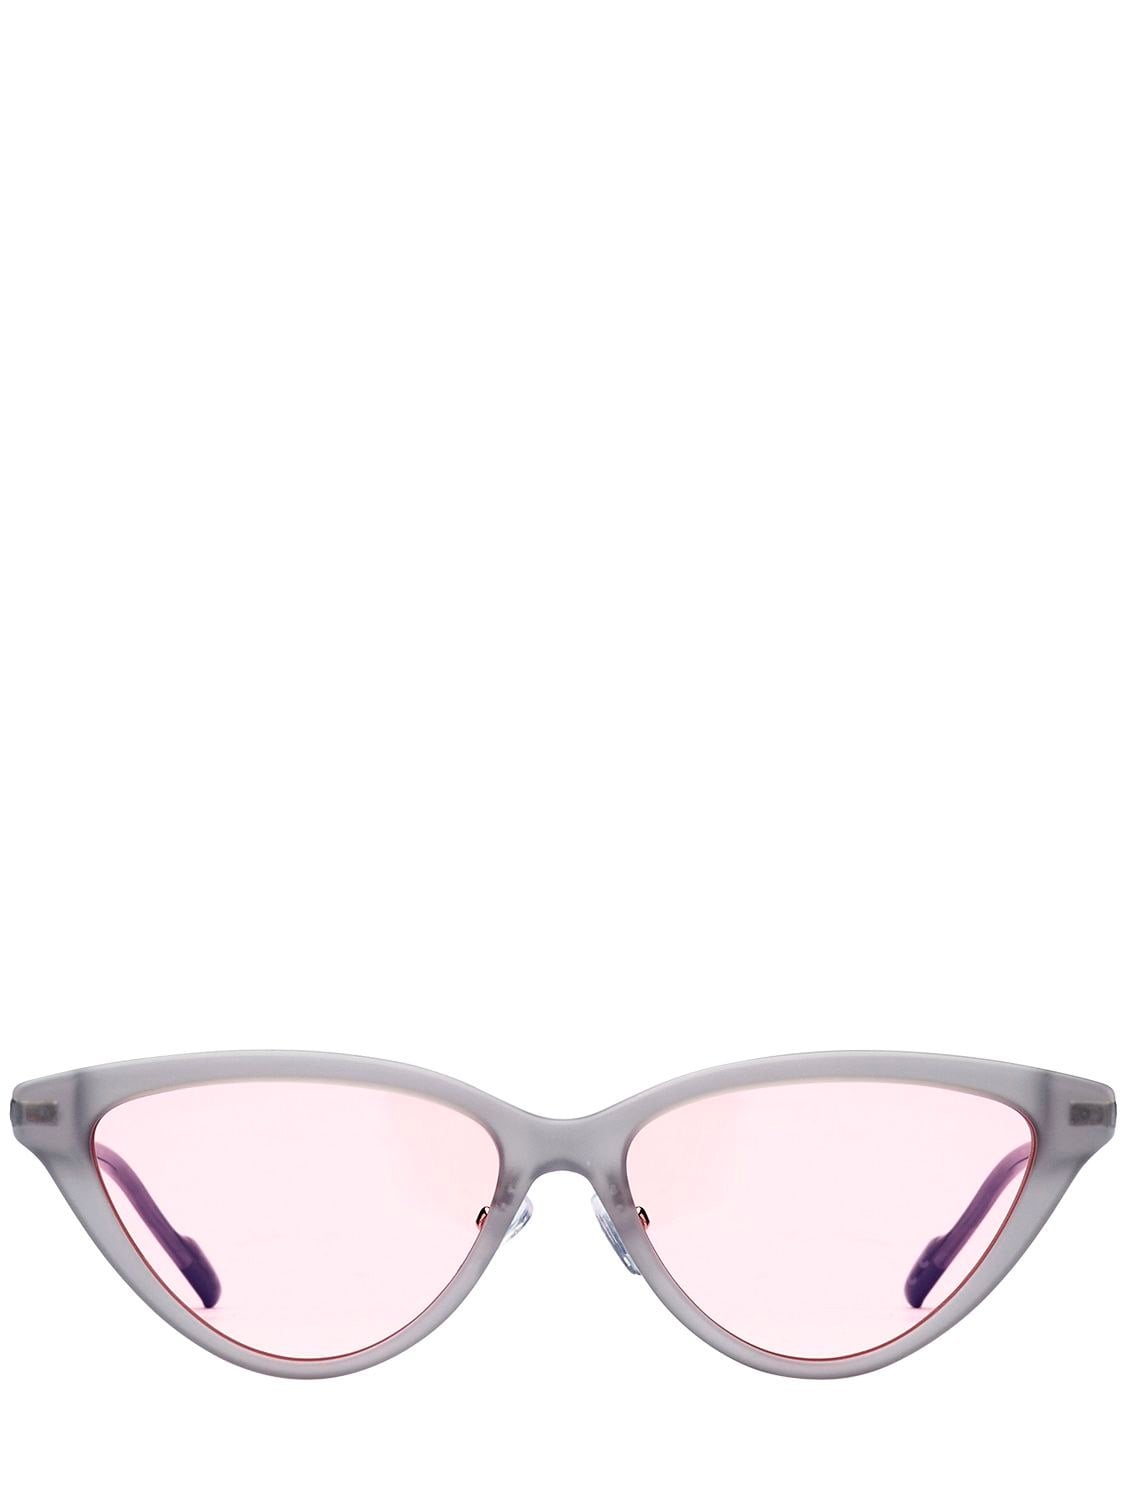 Adidas Originals by Italia Independent Acetate Cat-Eye Sunglasses ...